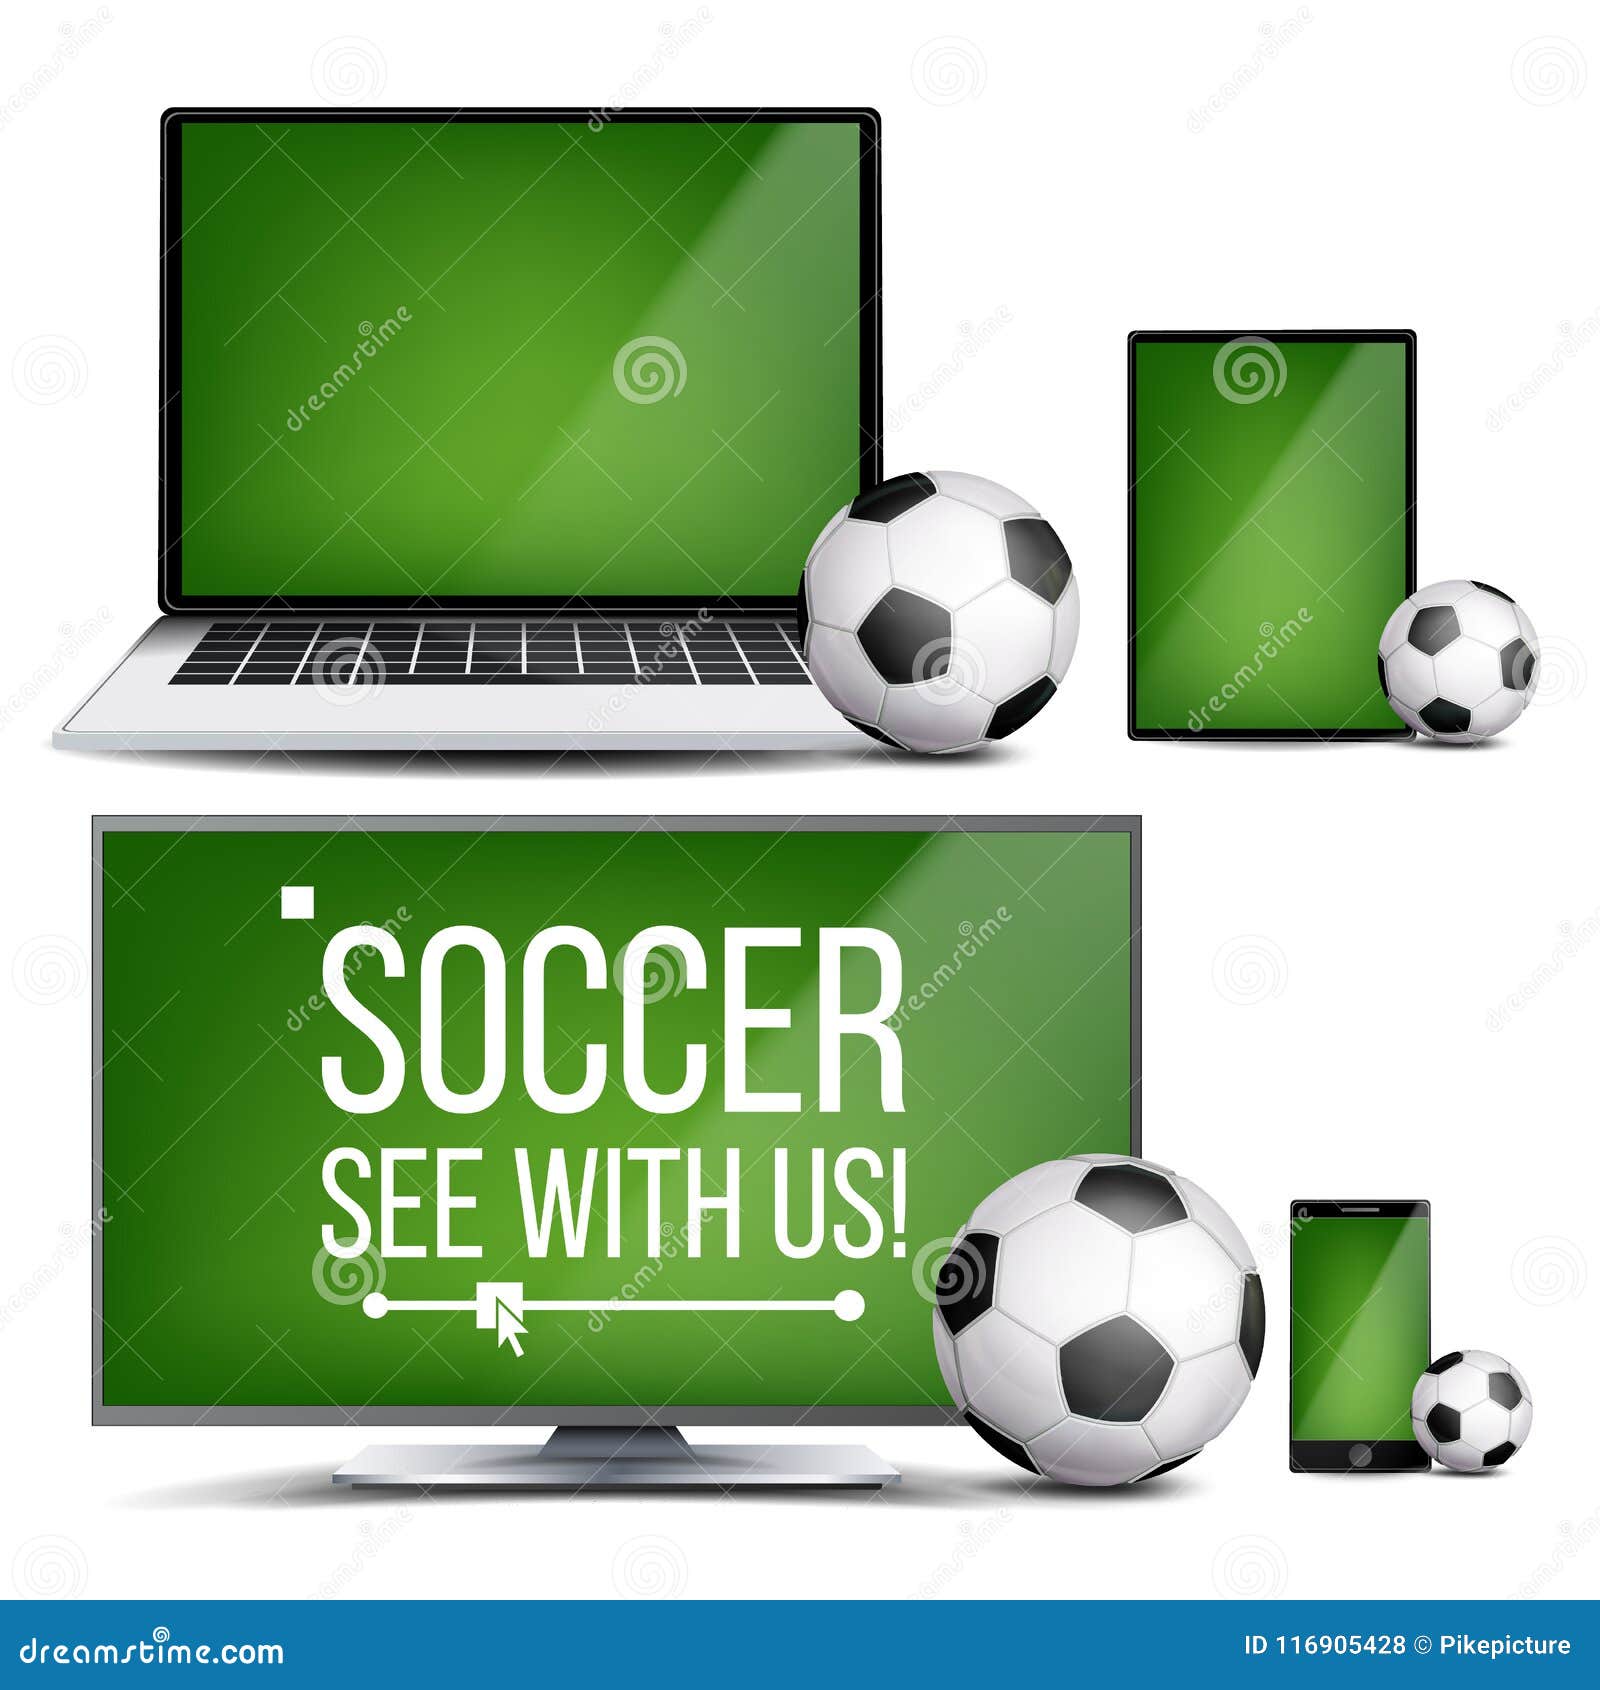 Soccer Application Vector. Field, Soccer Ball